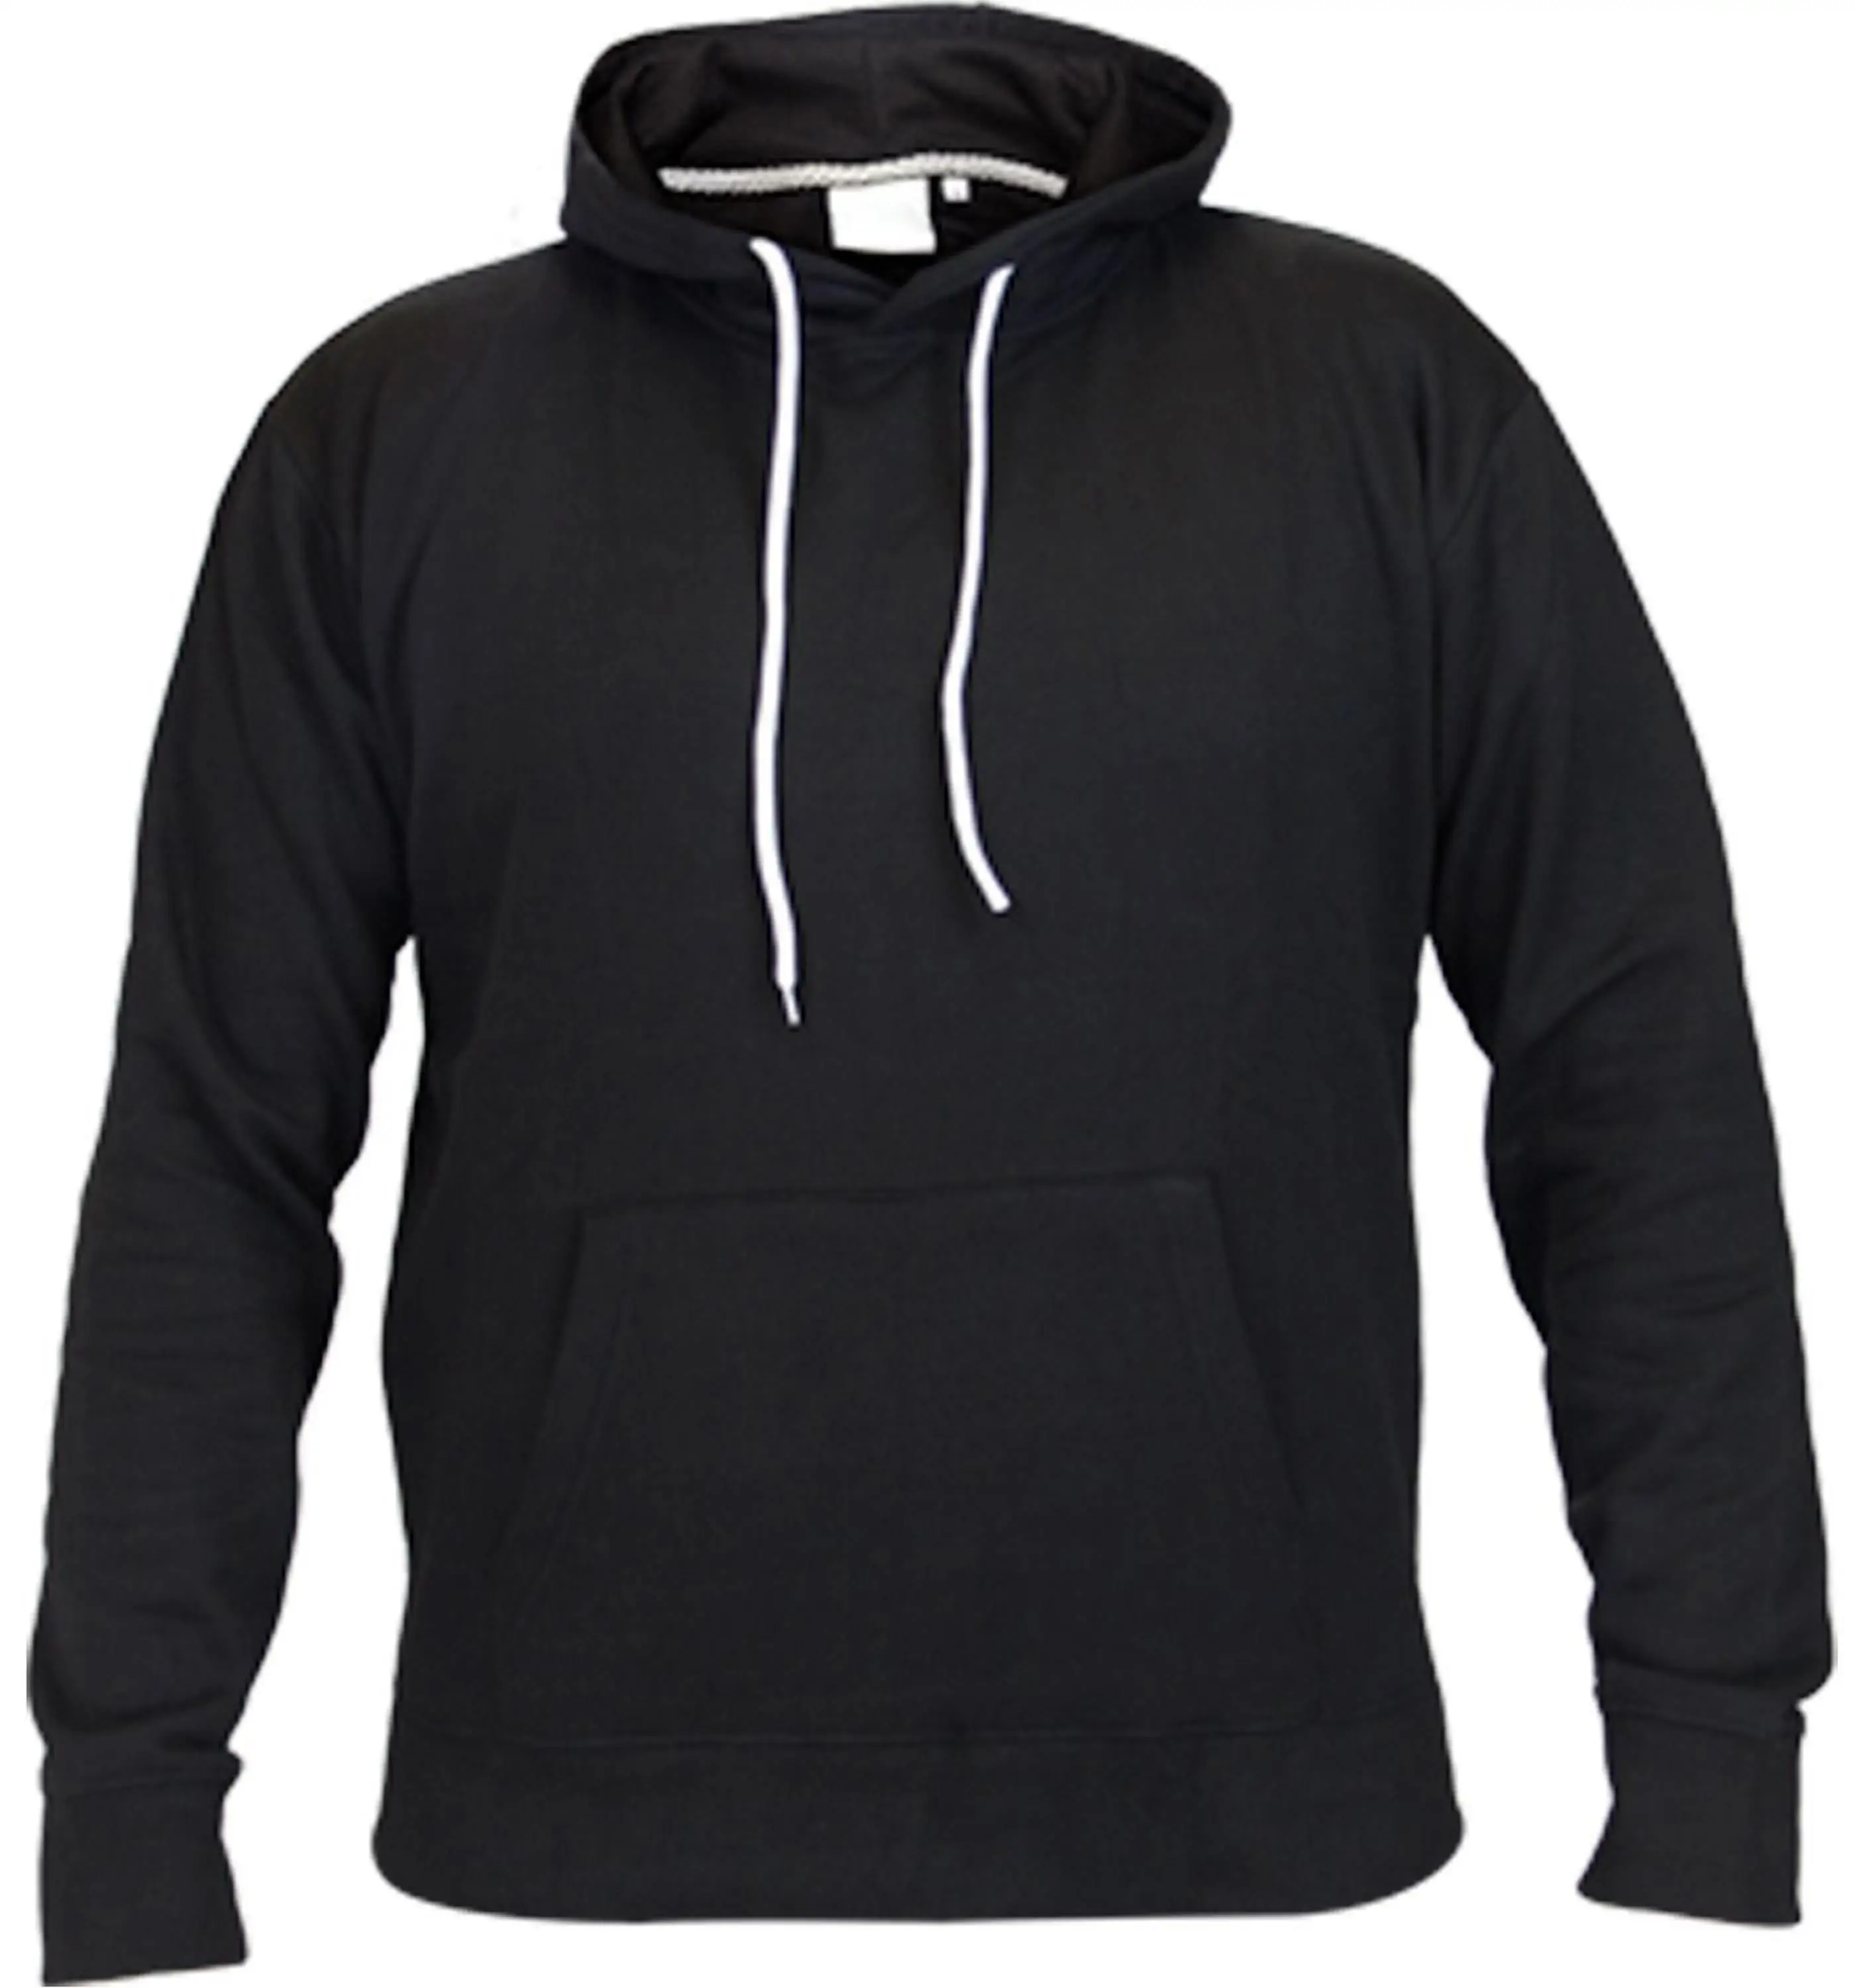 Wholesale Plain Black Hoodie/design Your Own Hoodie/no Zipper Hoodie Jacket - Buy Plain Hoodies ...